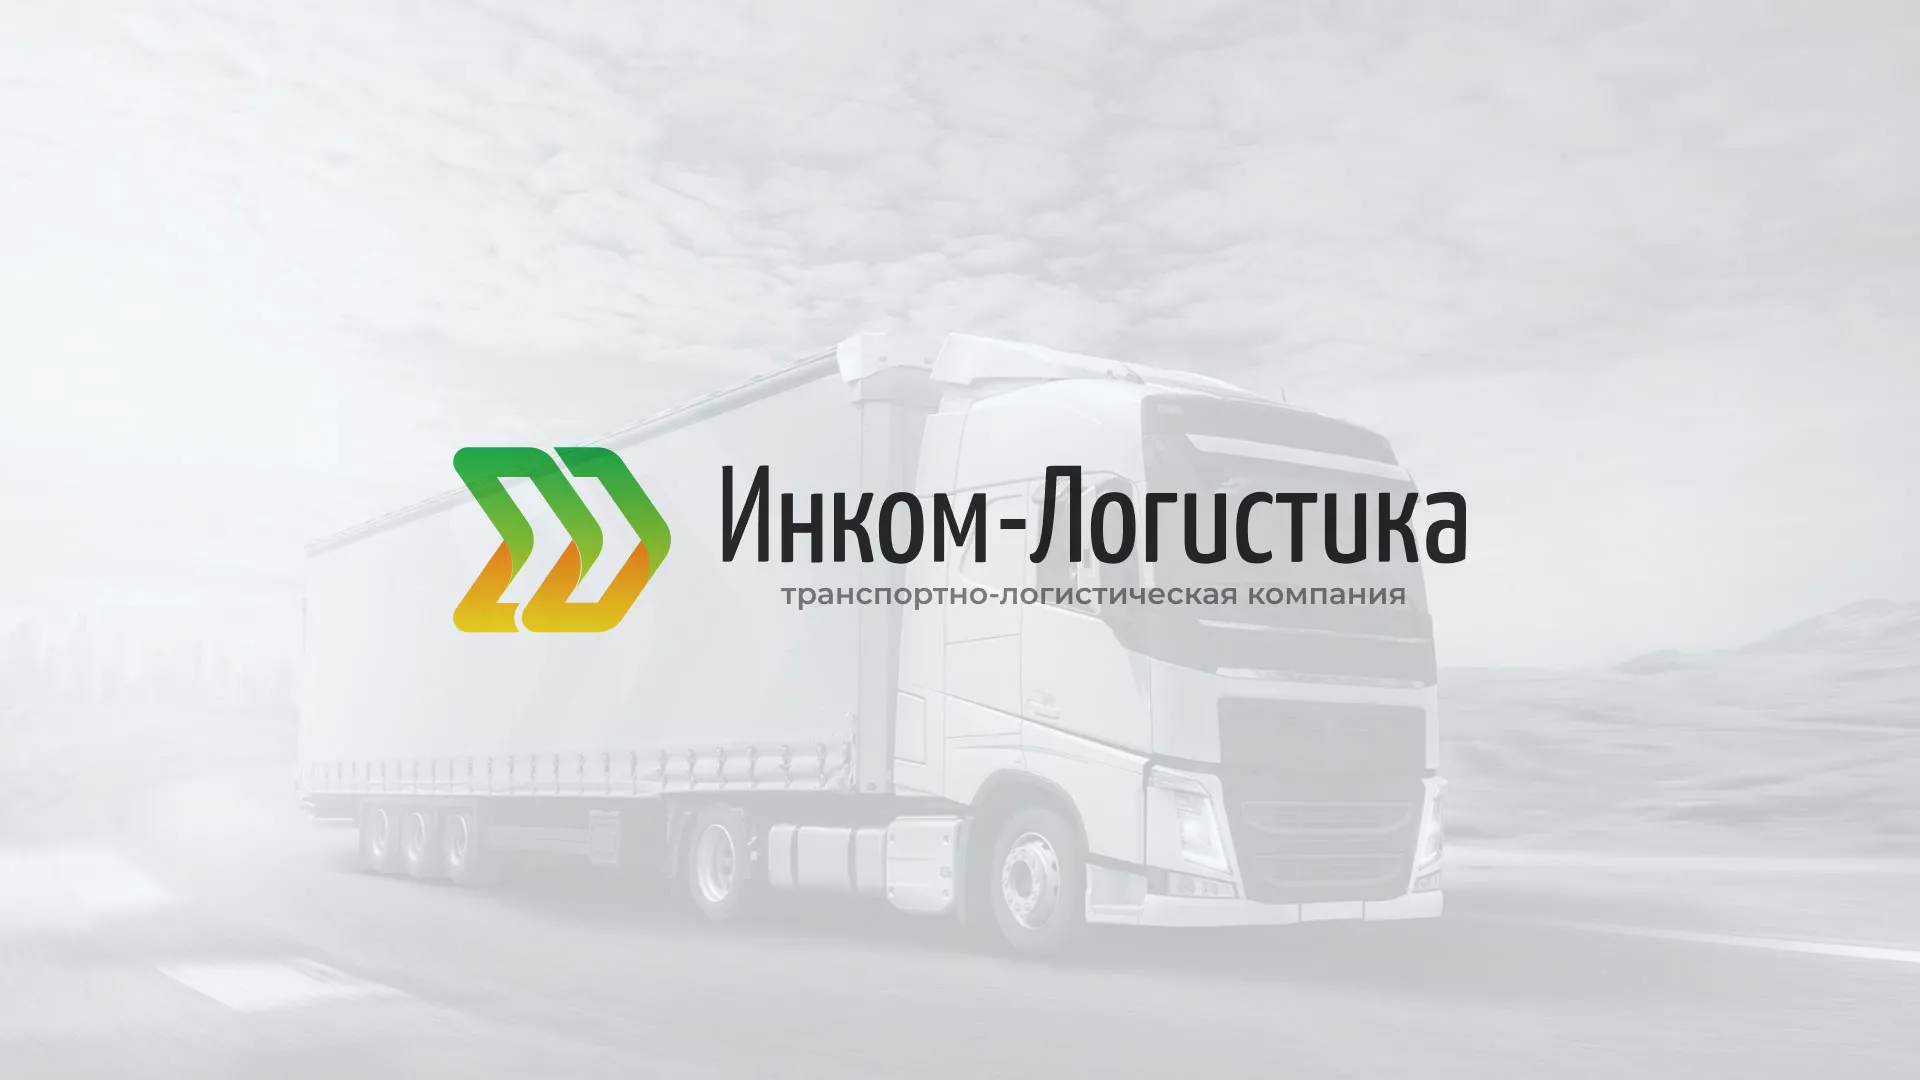 Разработка логотипа и сайта компании «Инком-Логистика» в Михайловке